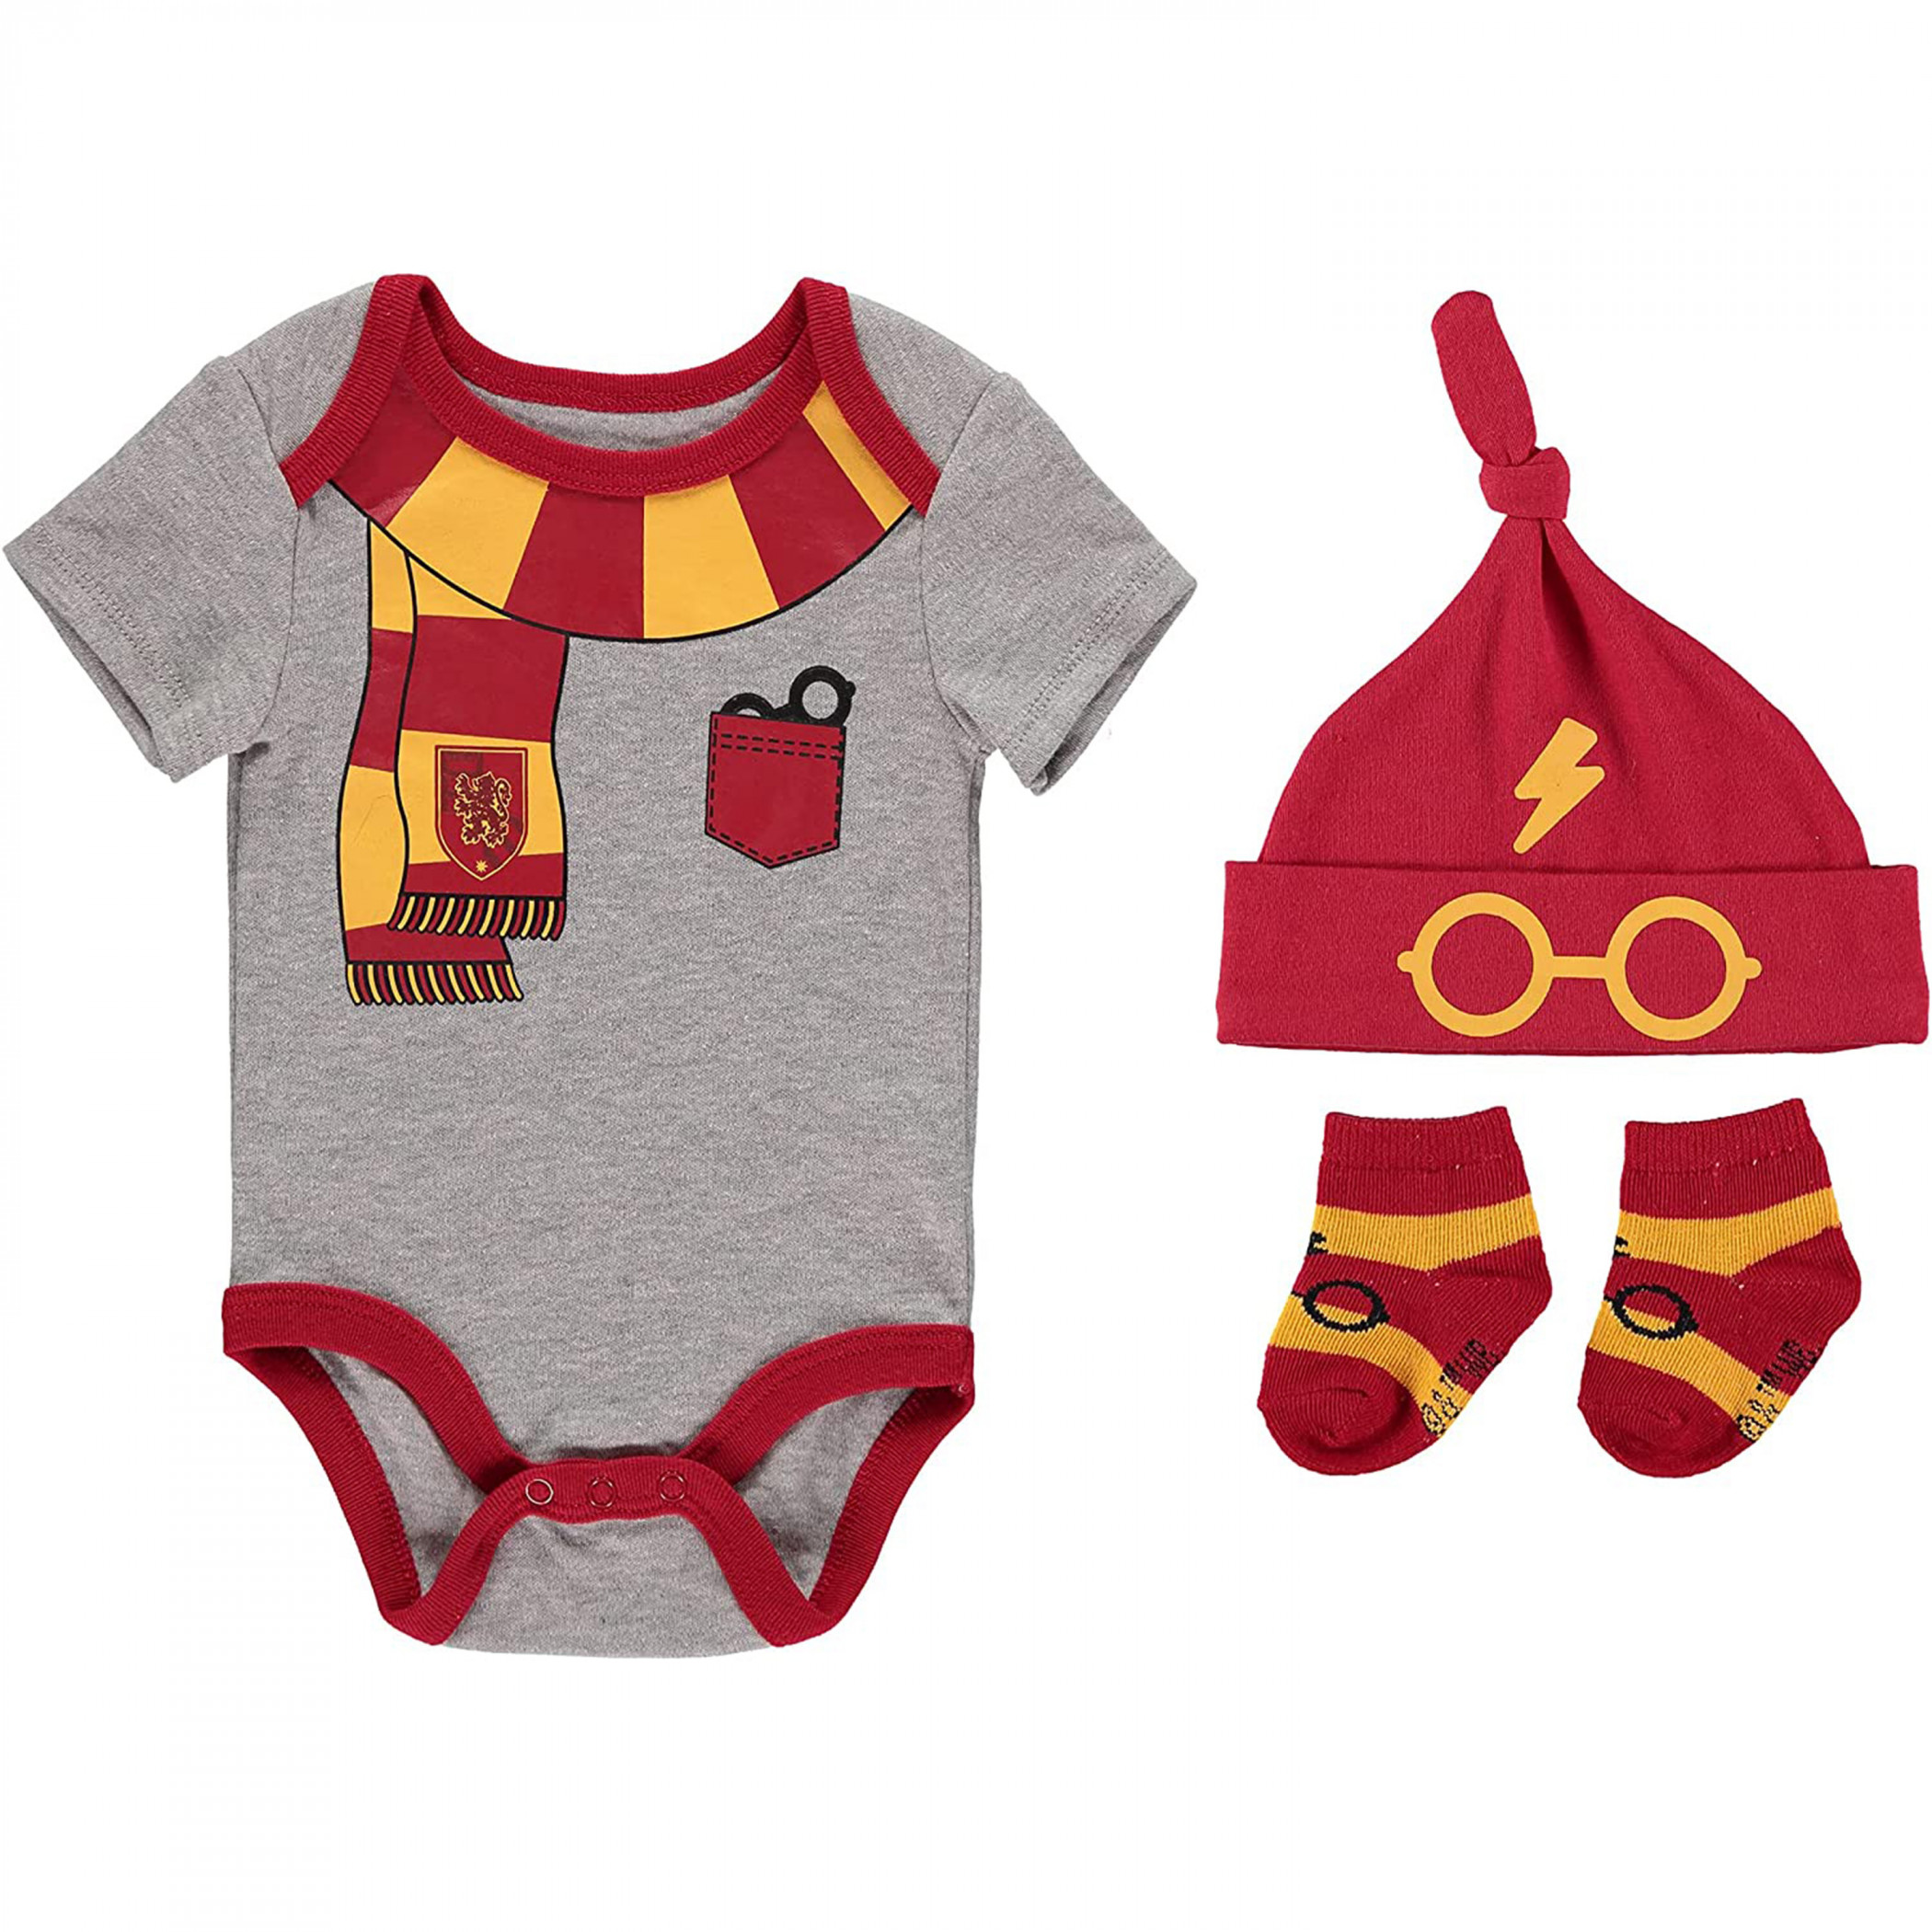 Harry Potter Gryffindor 3-Piece Infant Bodysuit Gift Set